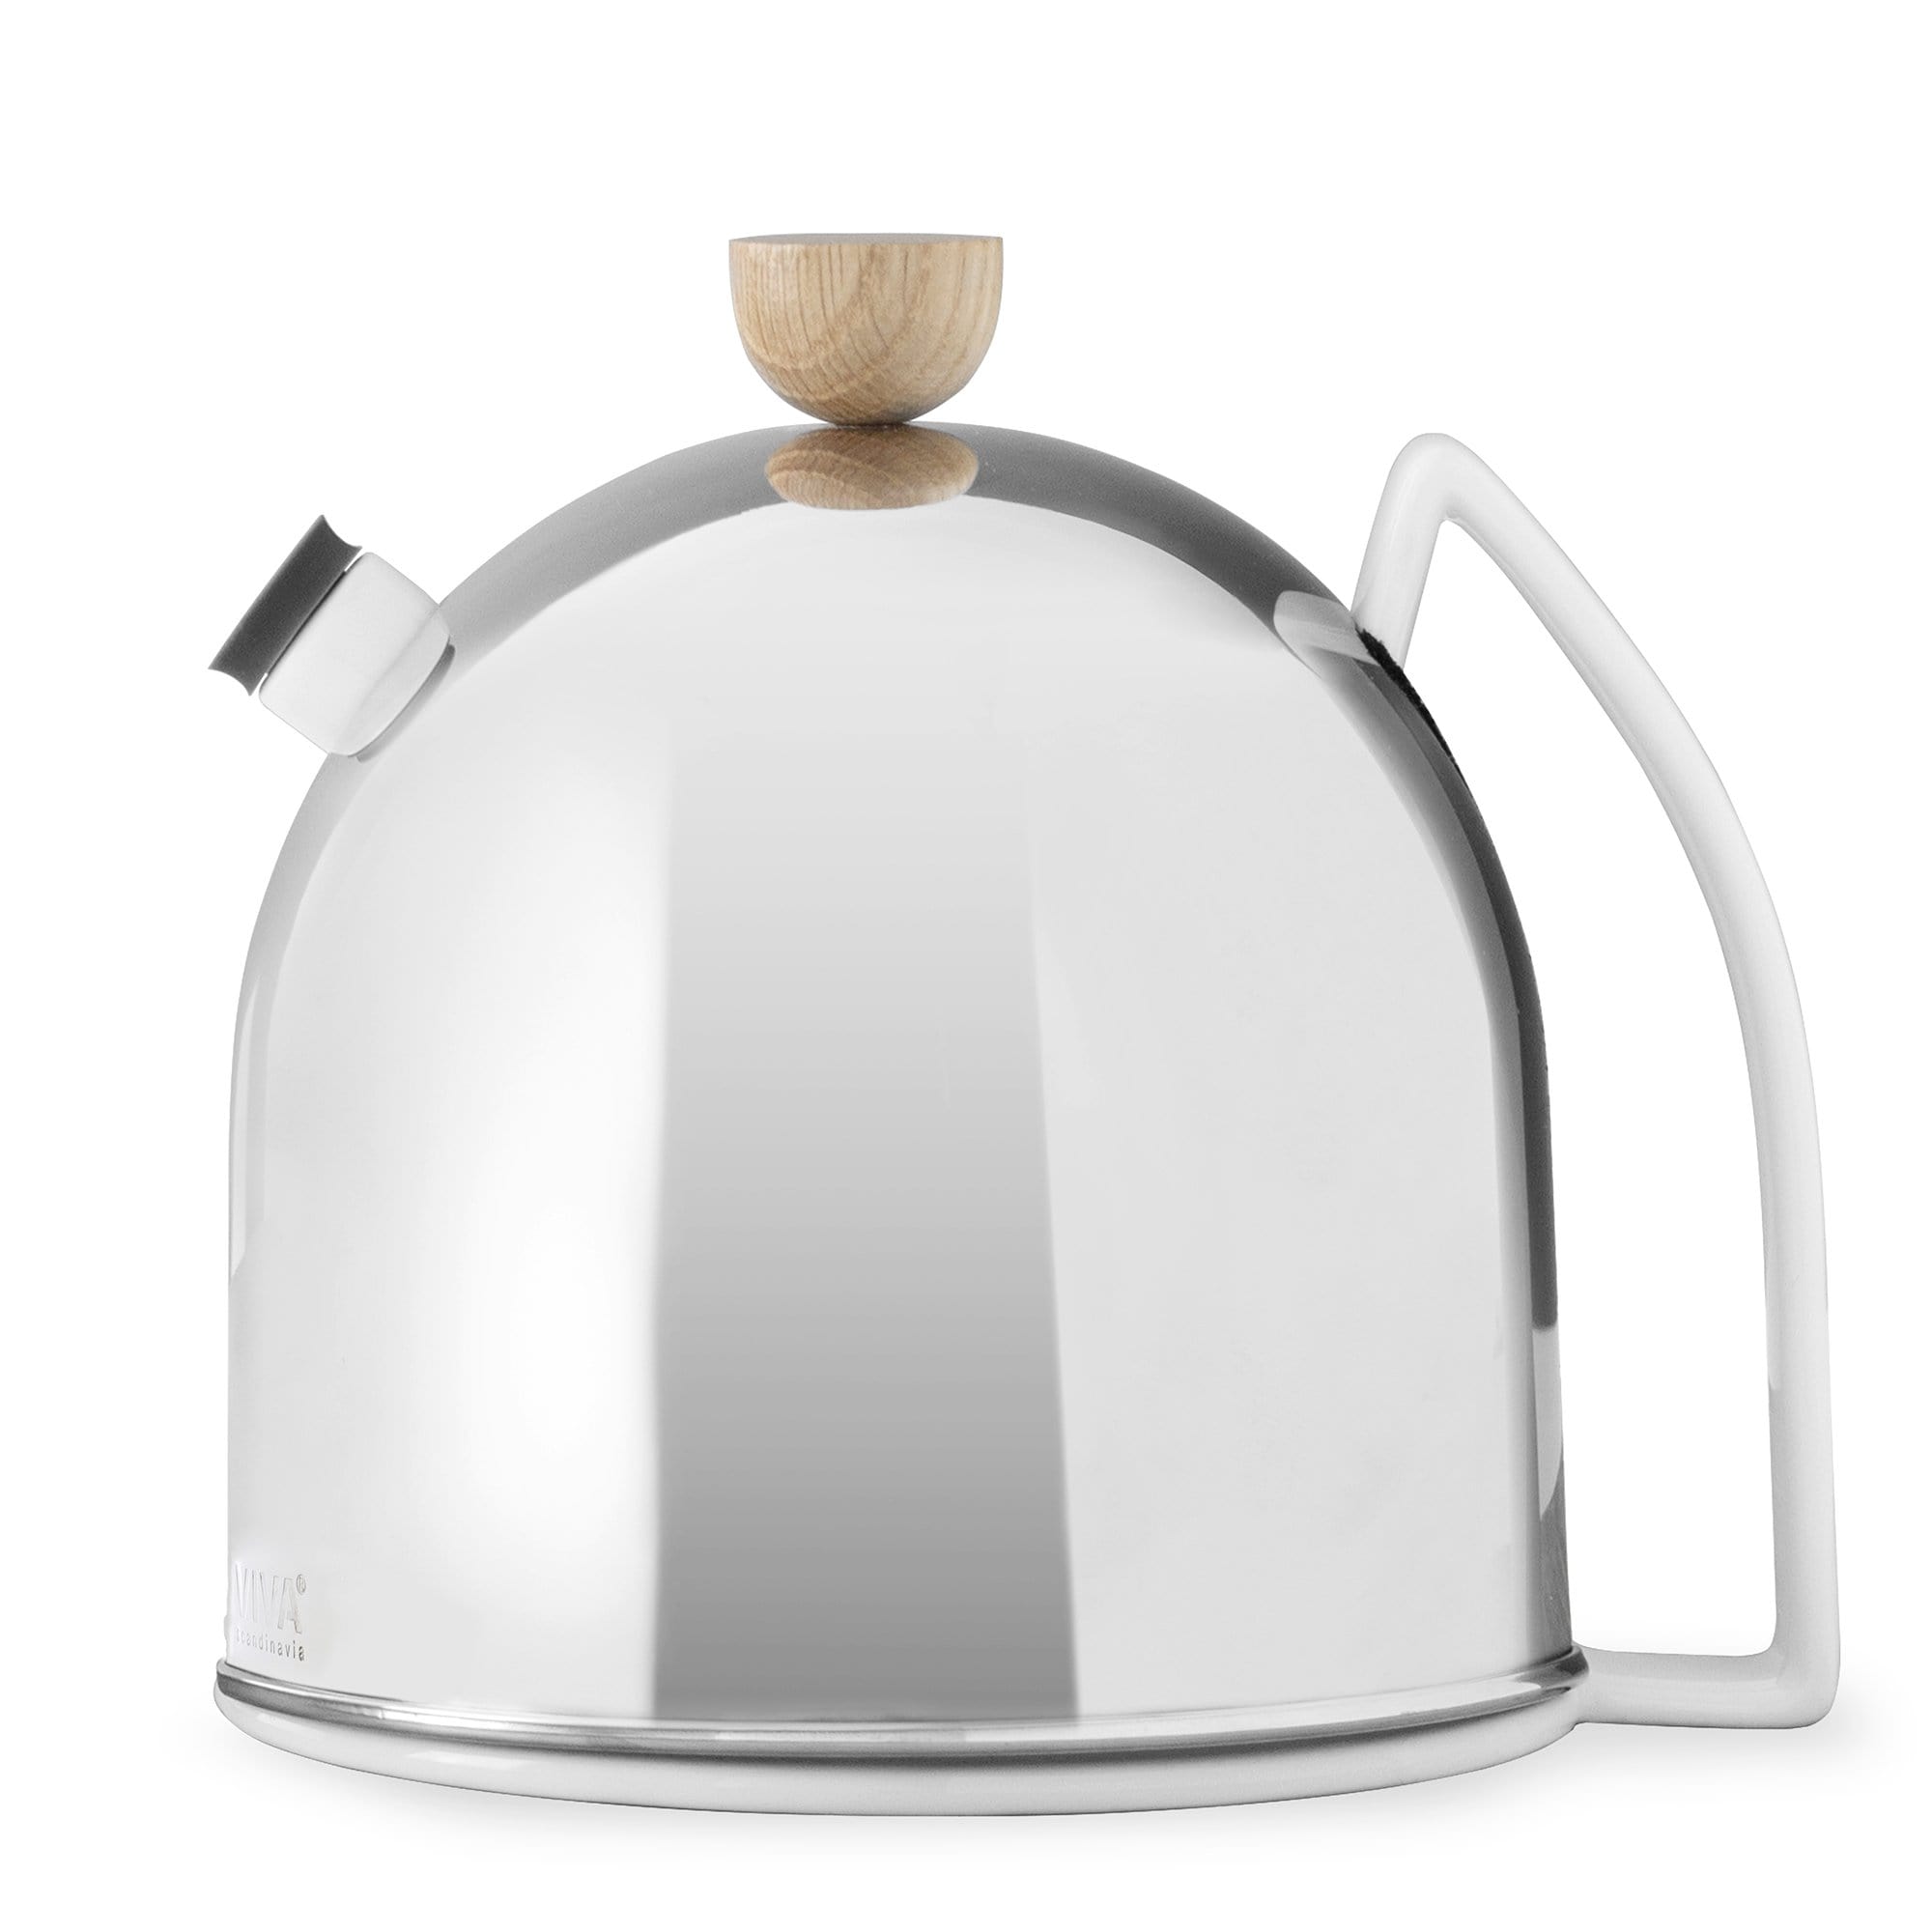 Thomas™ Teapot Large - VIVA